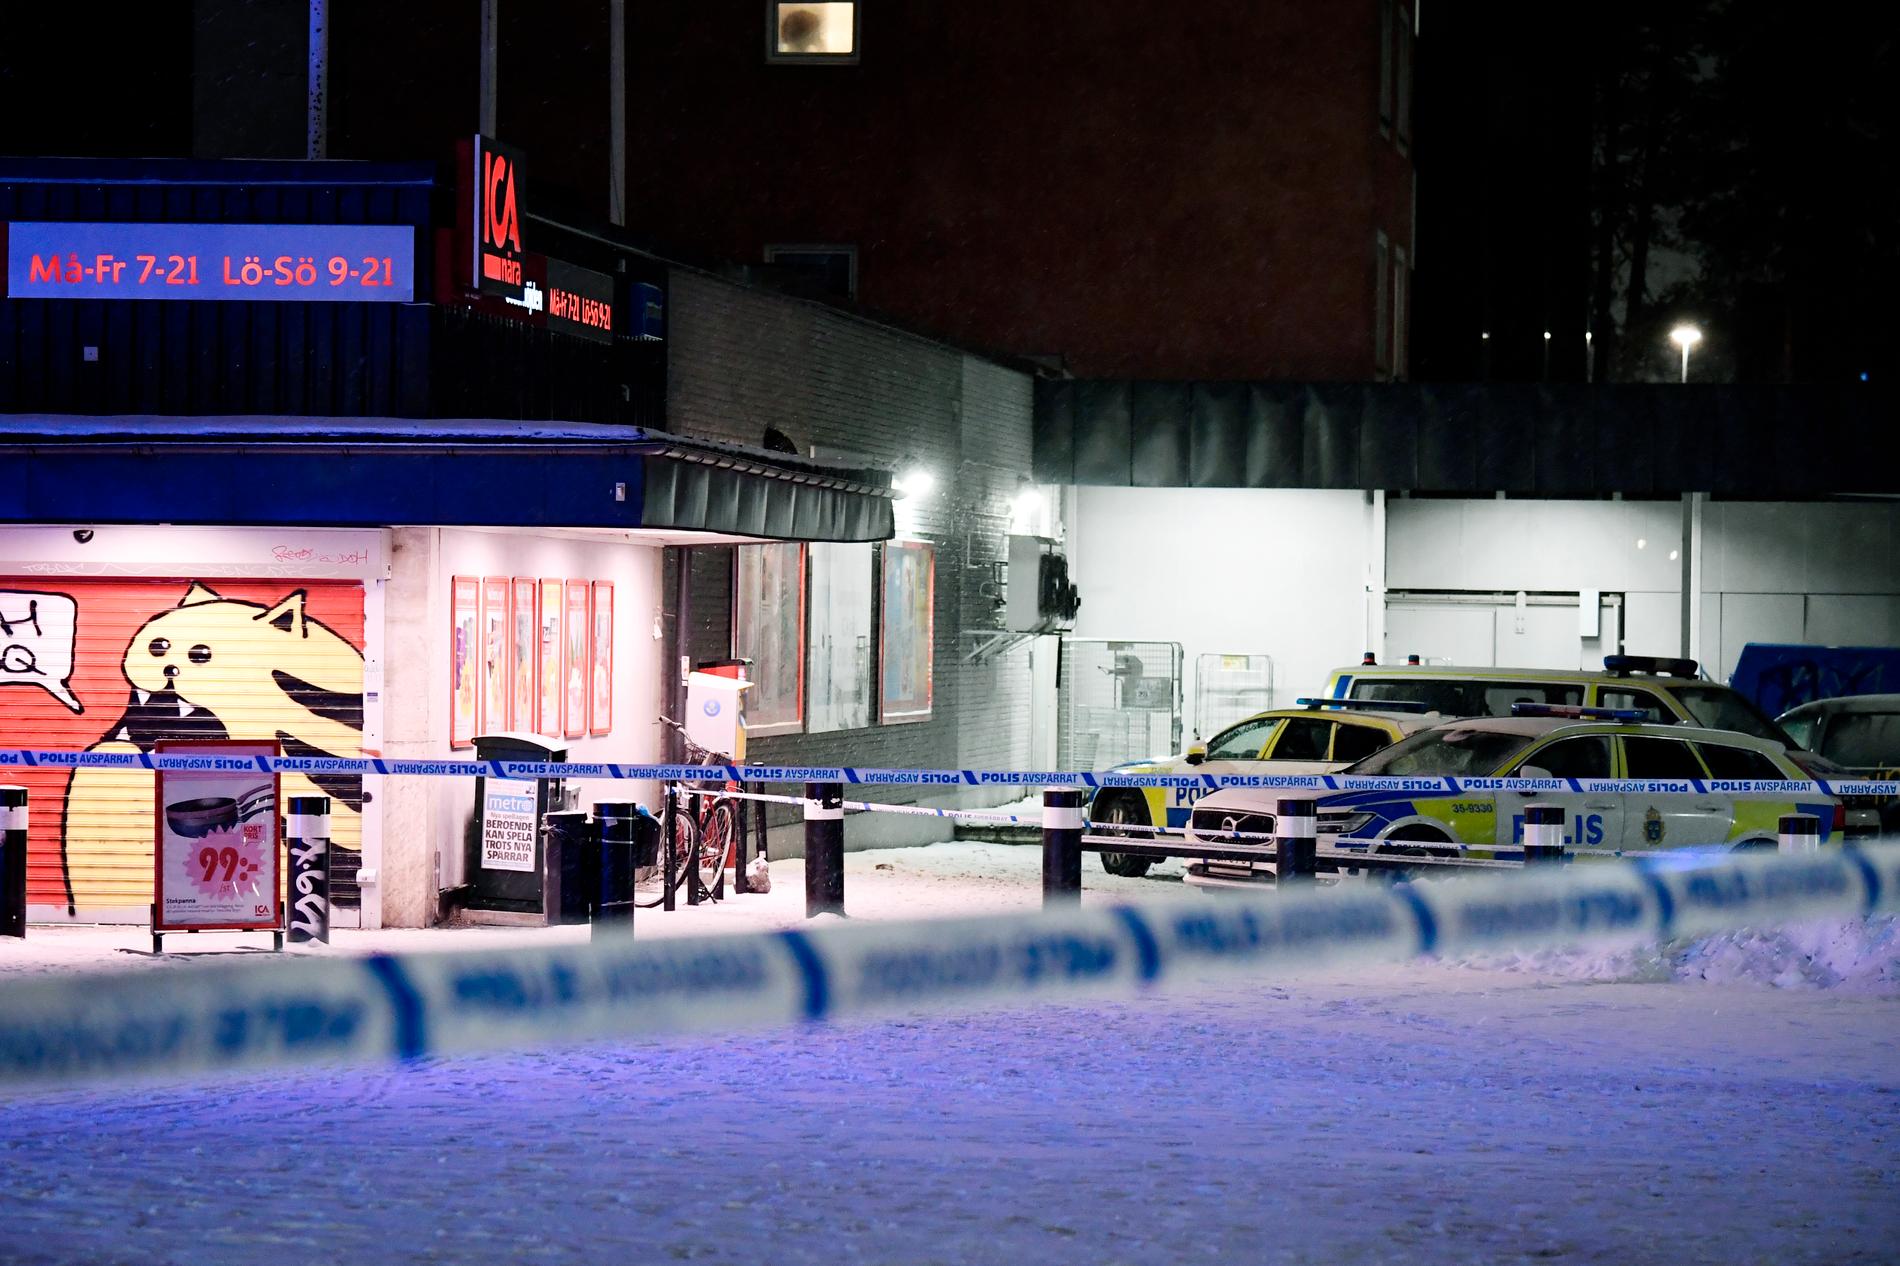 Ica-affären i Järfälla där skottlossningen ägde rum.